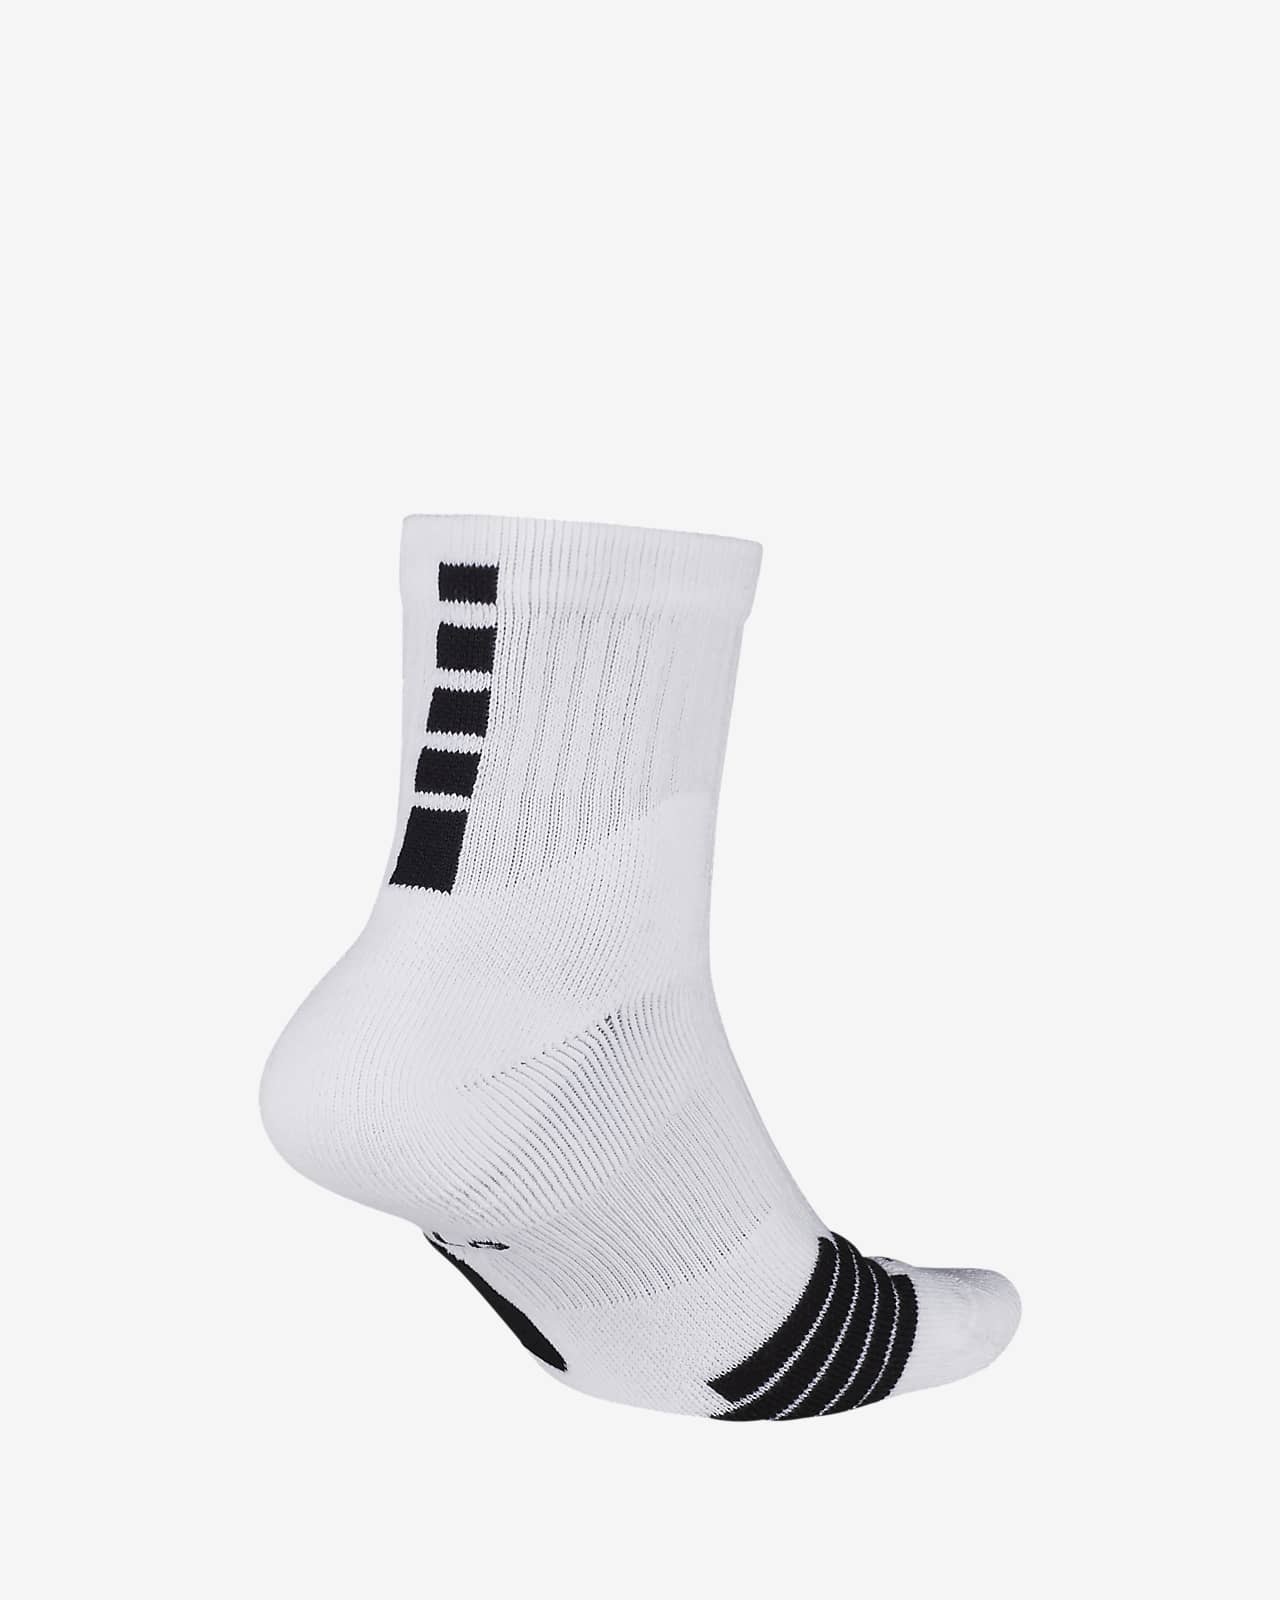 white nike mid socks